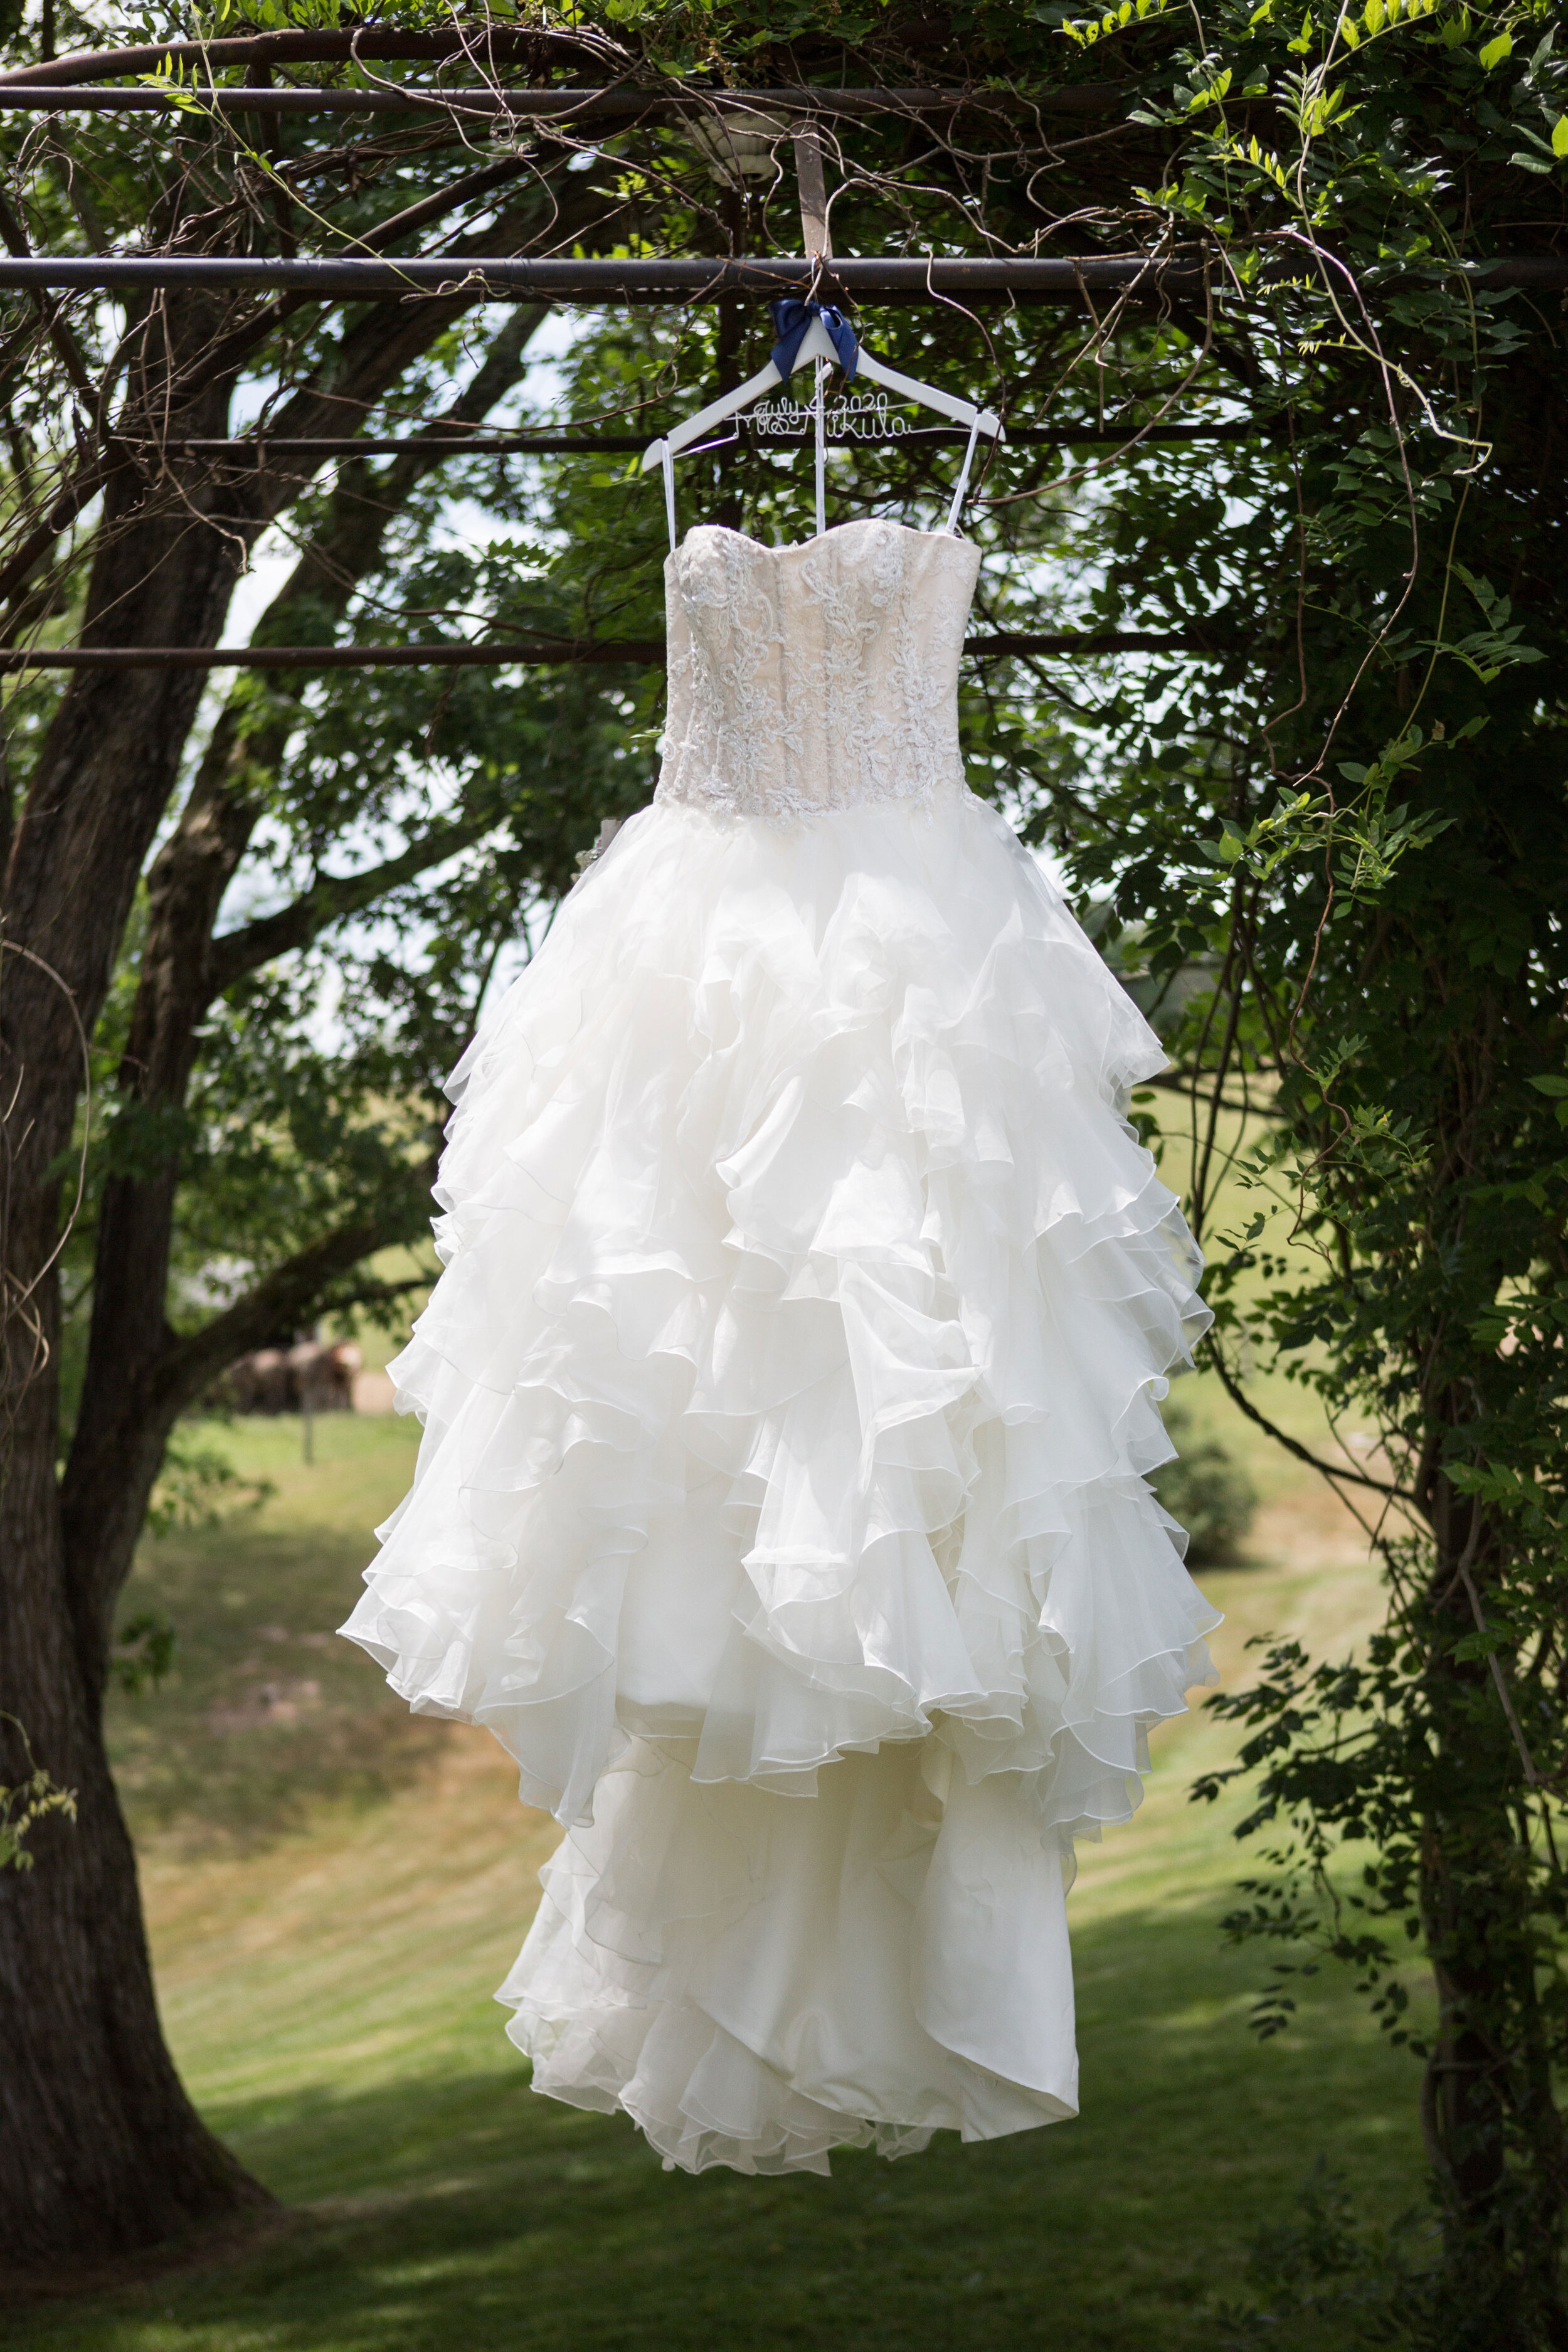 Shady_Elms_Farms_Wedding_Dress.jpeg